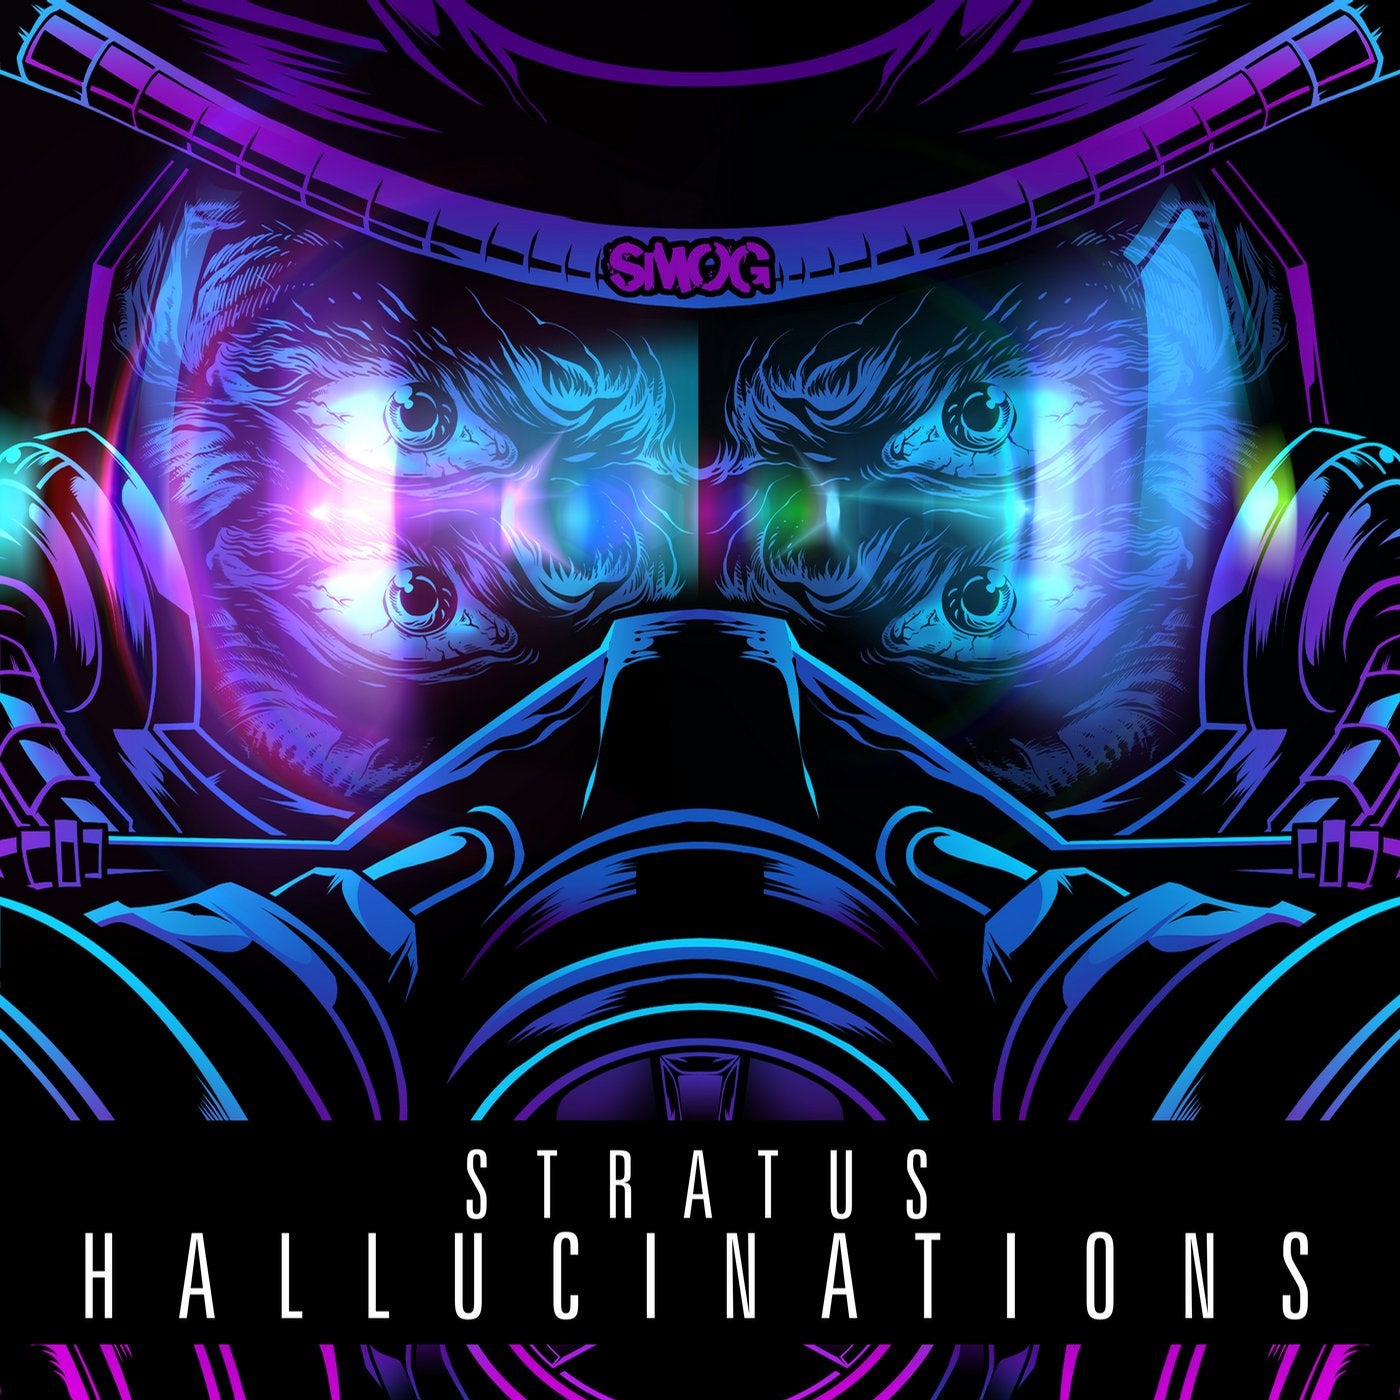 Hallucinations EP